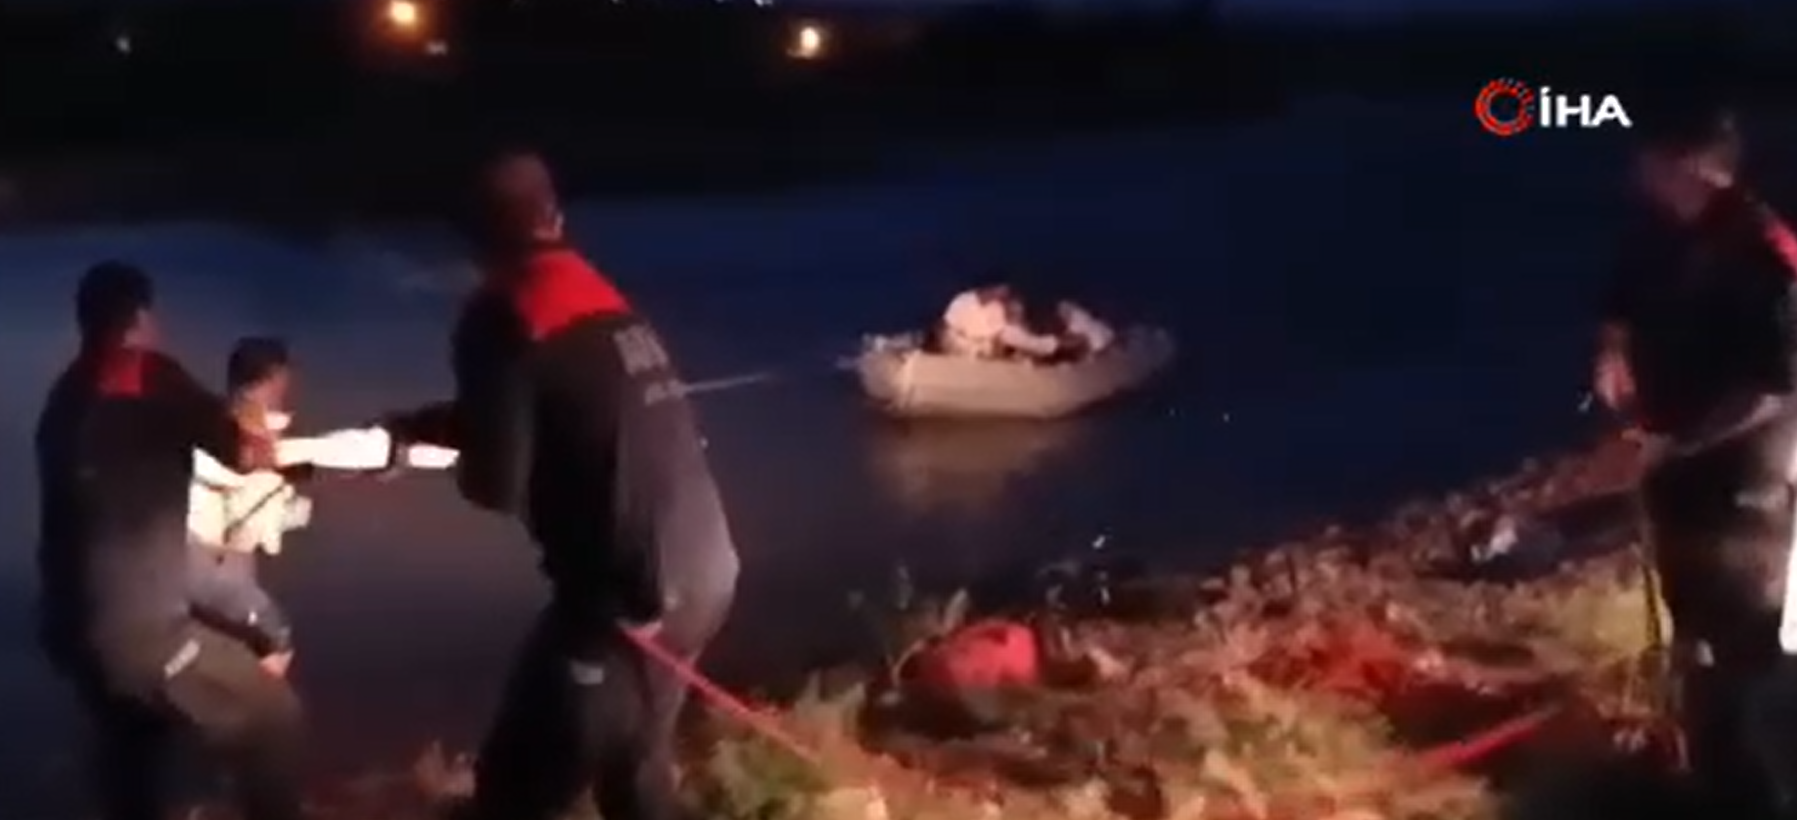 VİDEO - Diyarbakır’da nehirde mahsur kalan 11 kişilik aile kurtarıldı